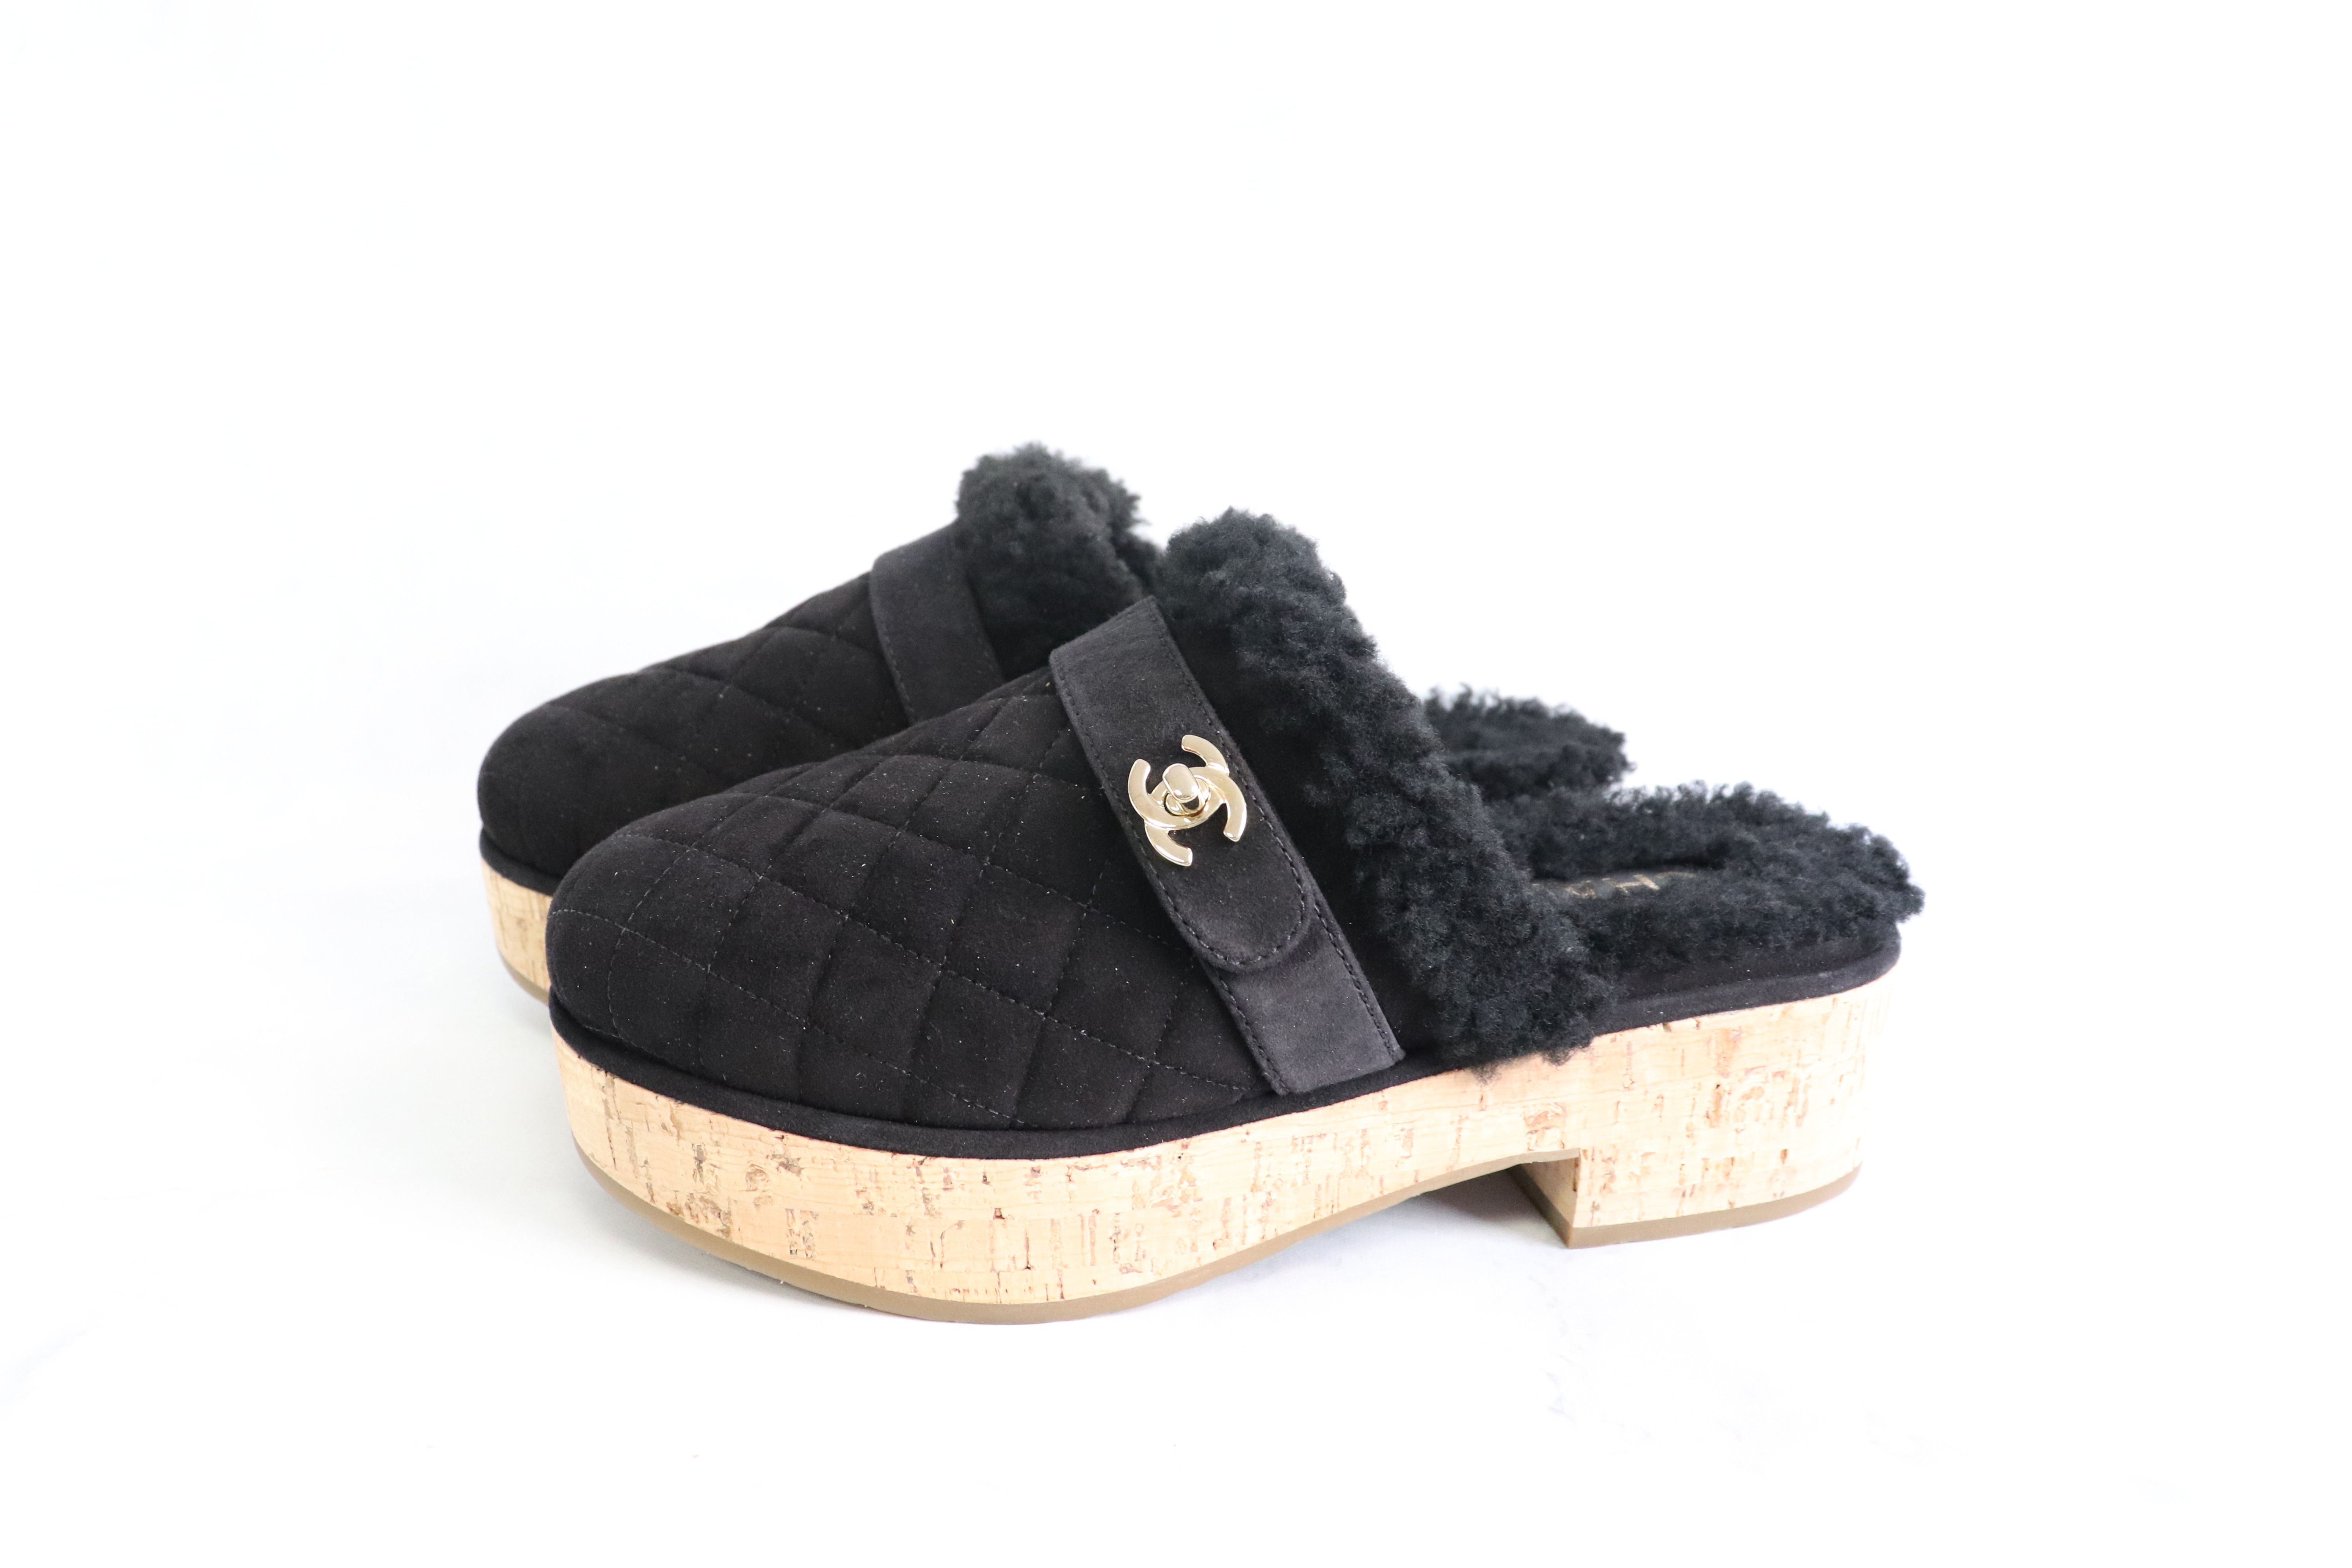 Chanel Black Clogs Sandals – thankunext.us